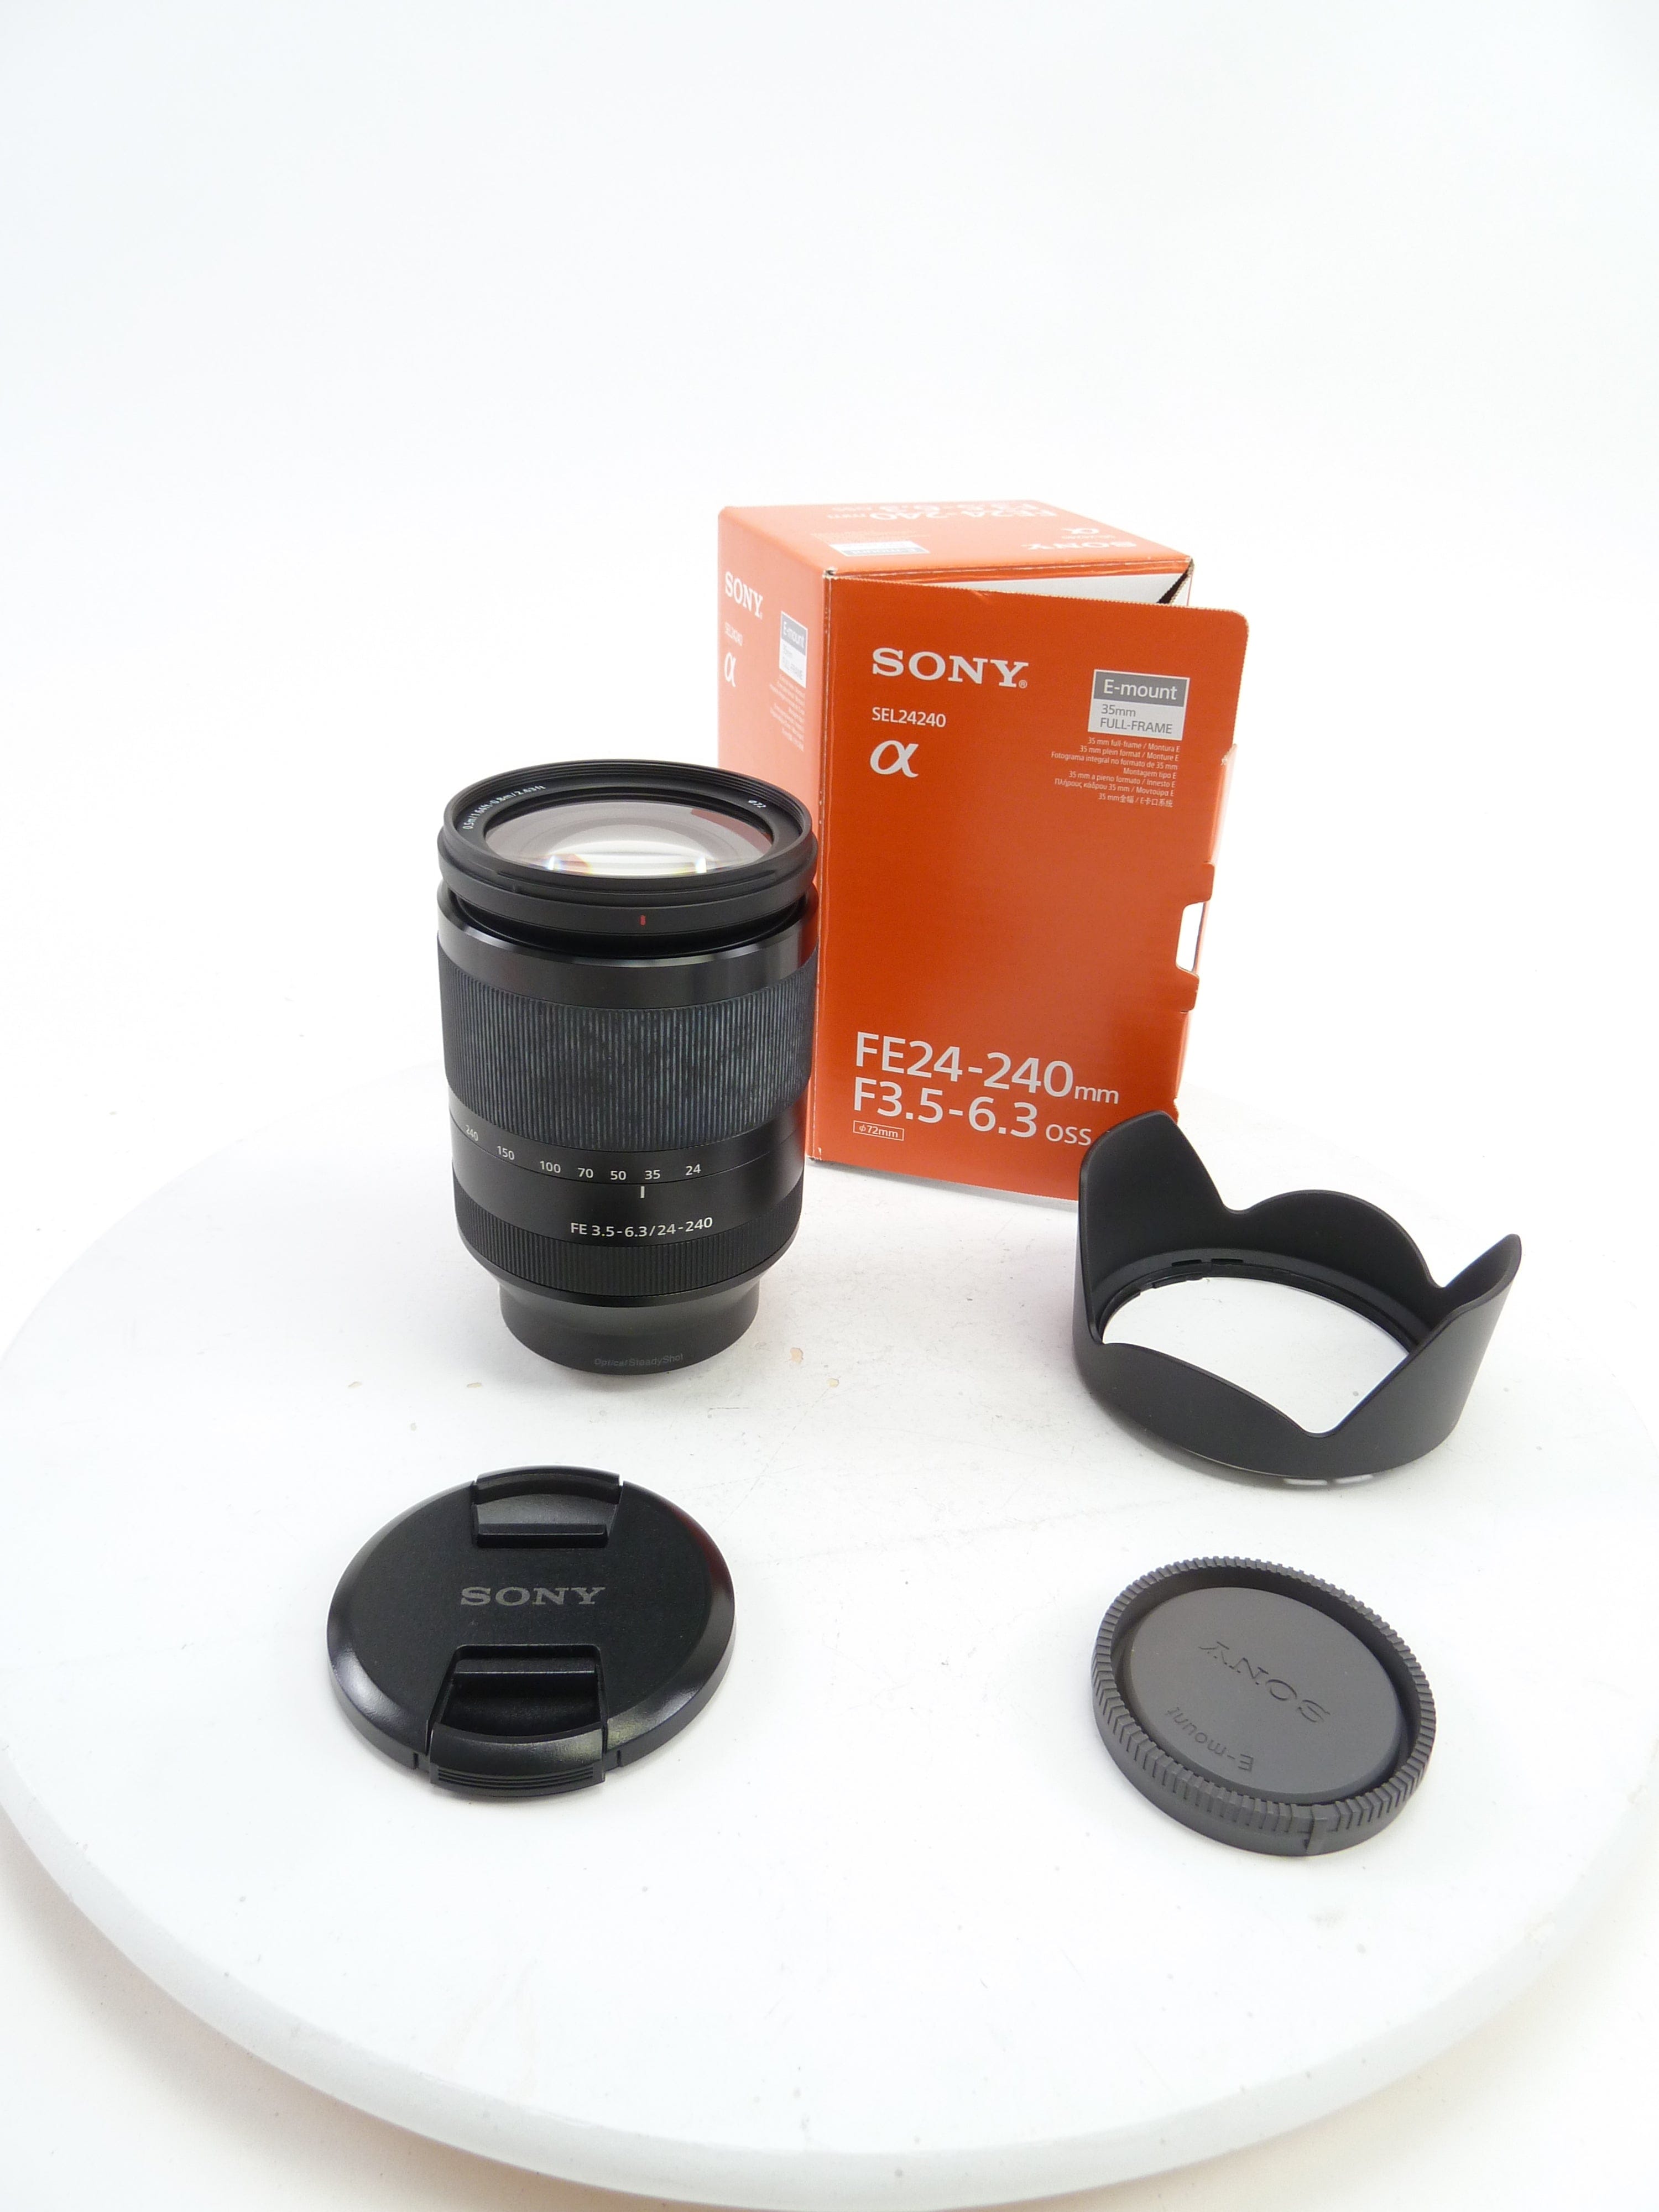 Sony FE 24-240MM F3.5-6.3 OSS E-Mount Full Frand – Camera